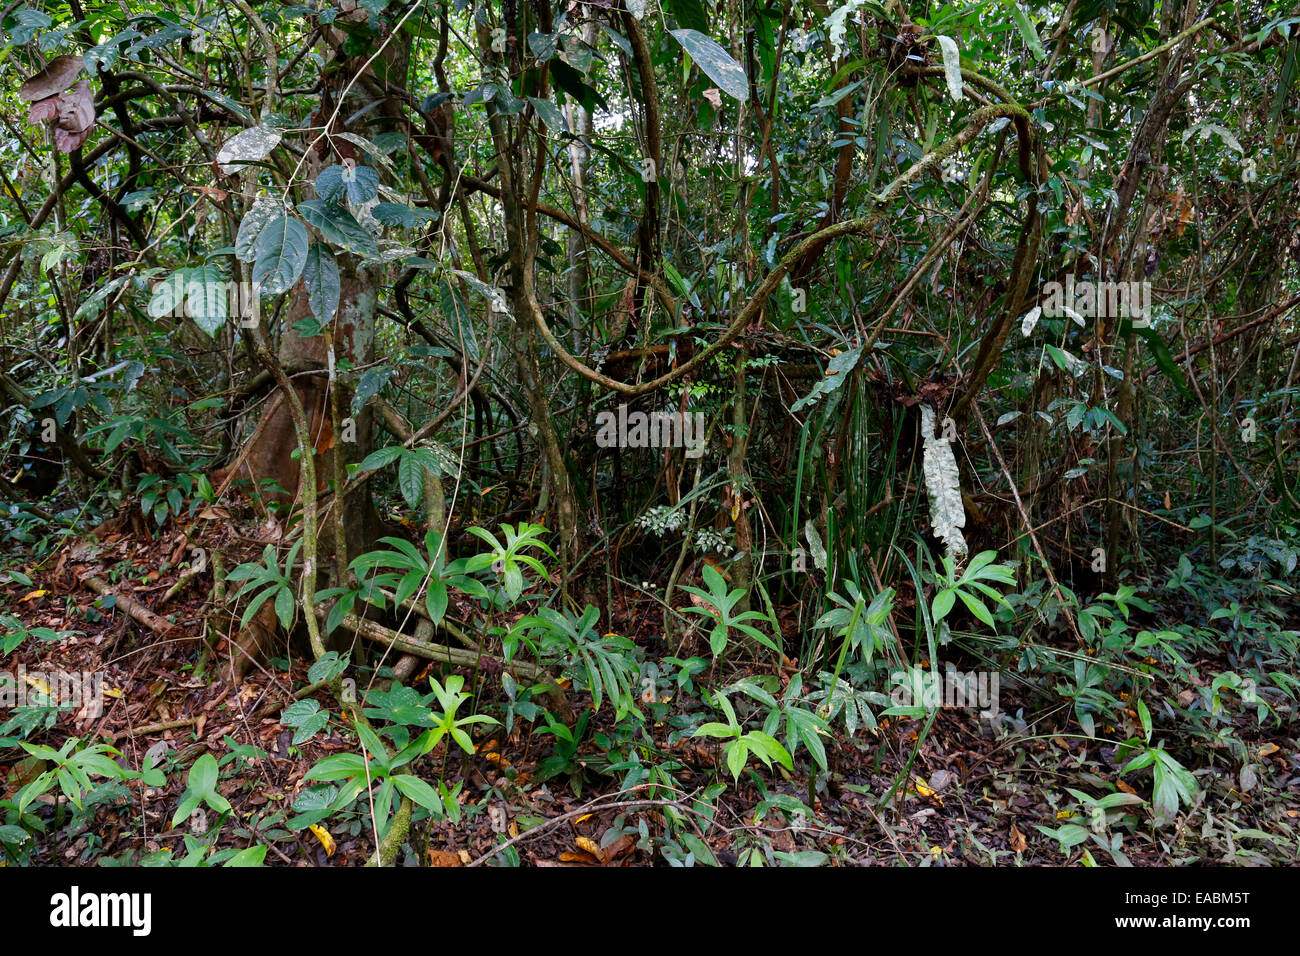 Rainforest at Niah National Park, Sarawak, Malaysia Stock Photo